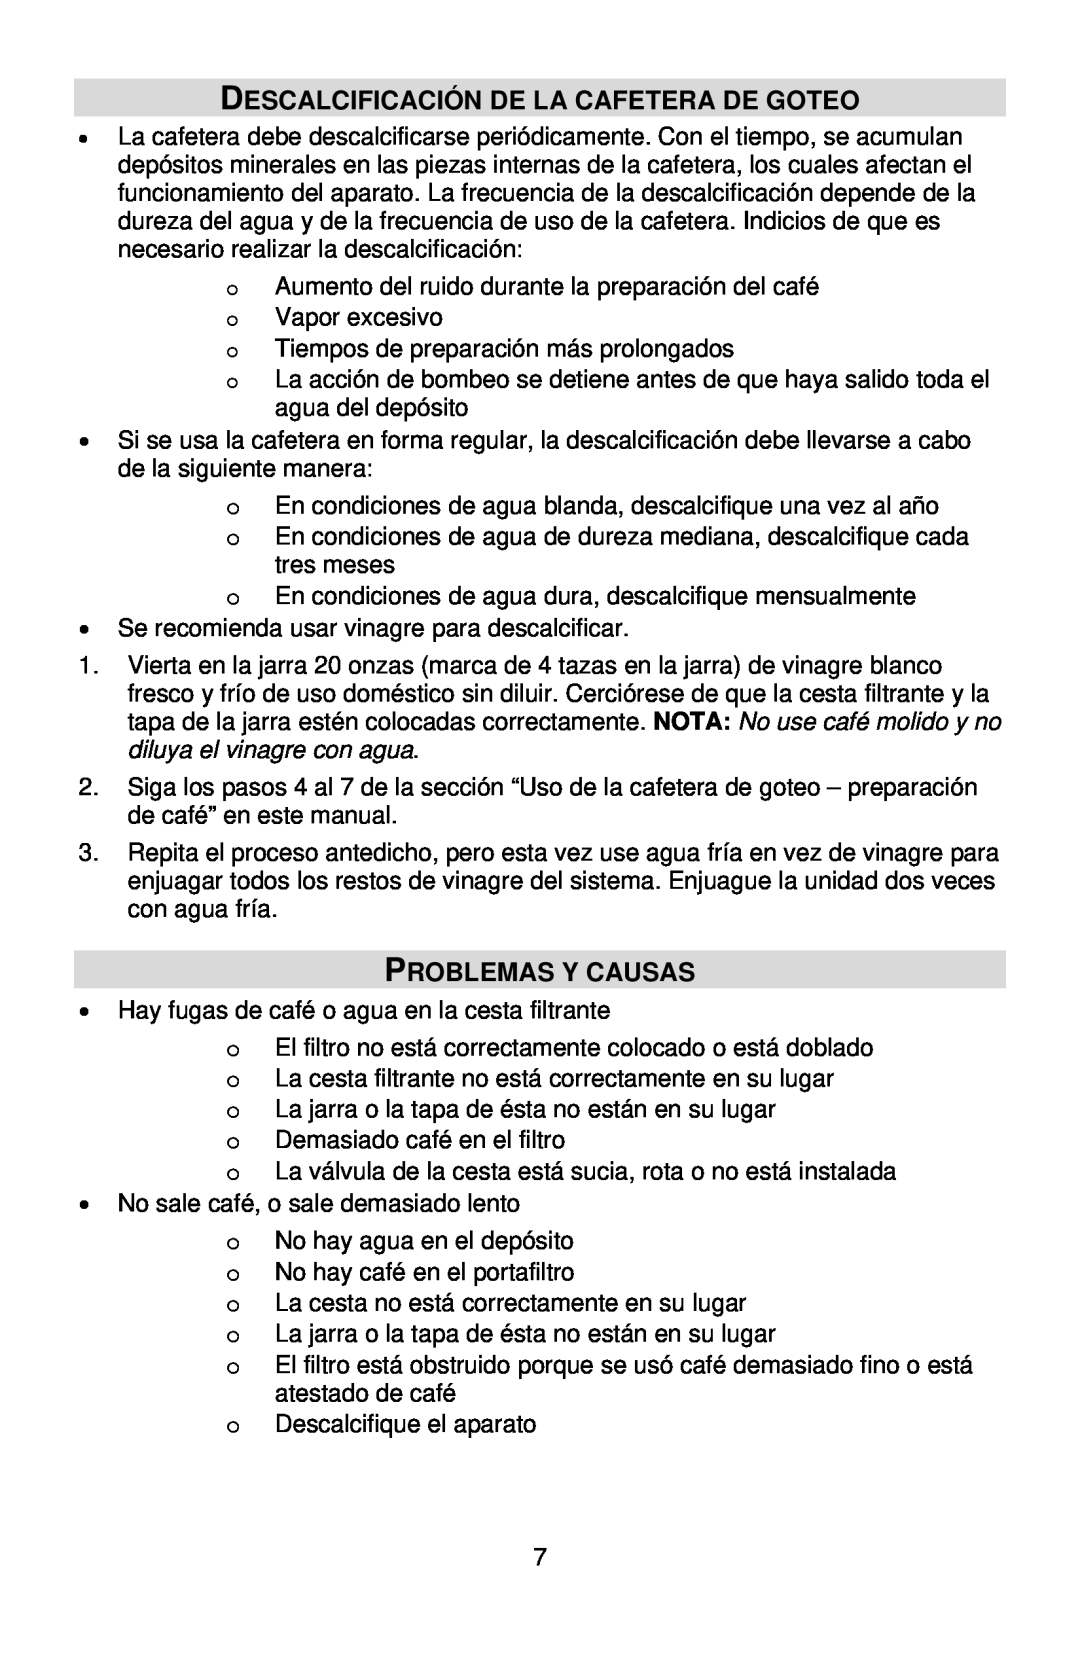 West Bend Auto-off Coffeemaker instruction manual Descalcificación De La Cafetera De Goteo, Problemas Y Causas 